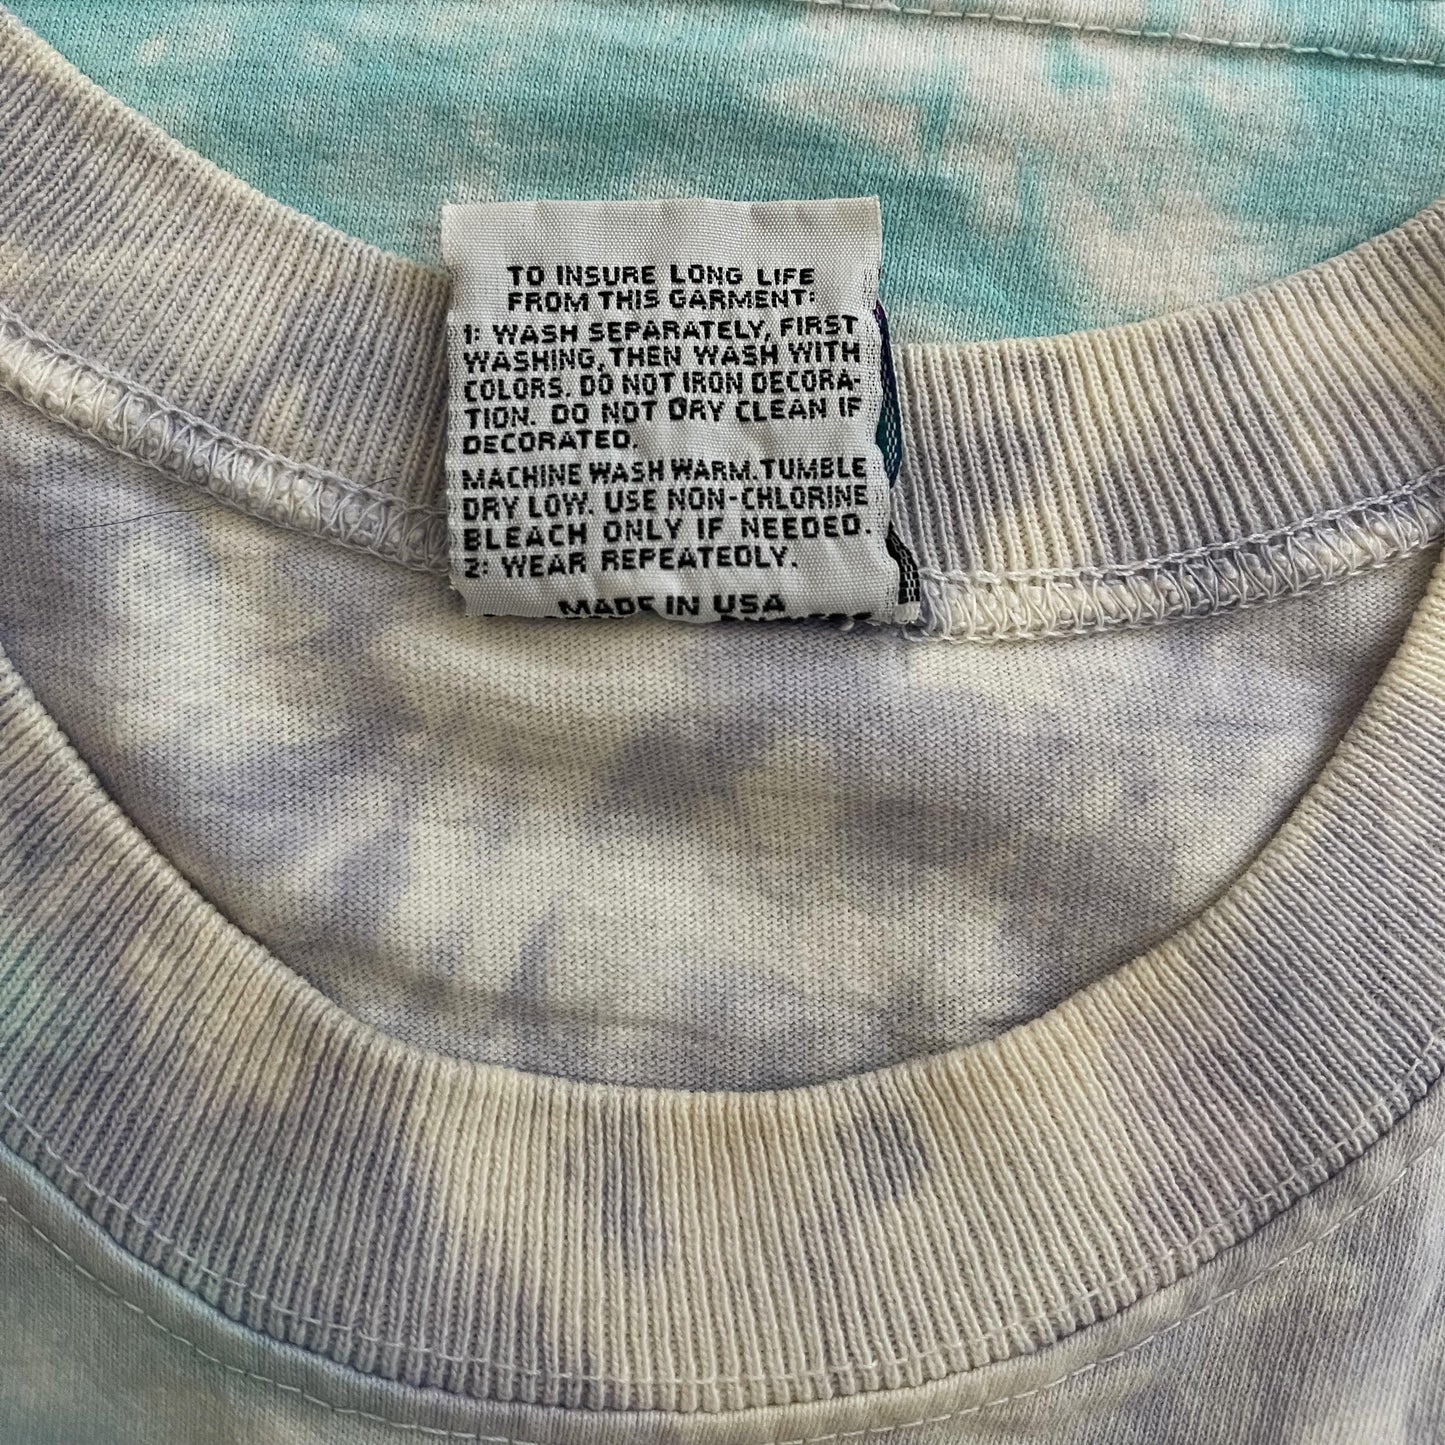 Liquid Blue Grateful Dead T-Shirt - Known Source